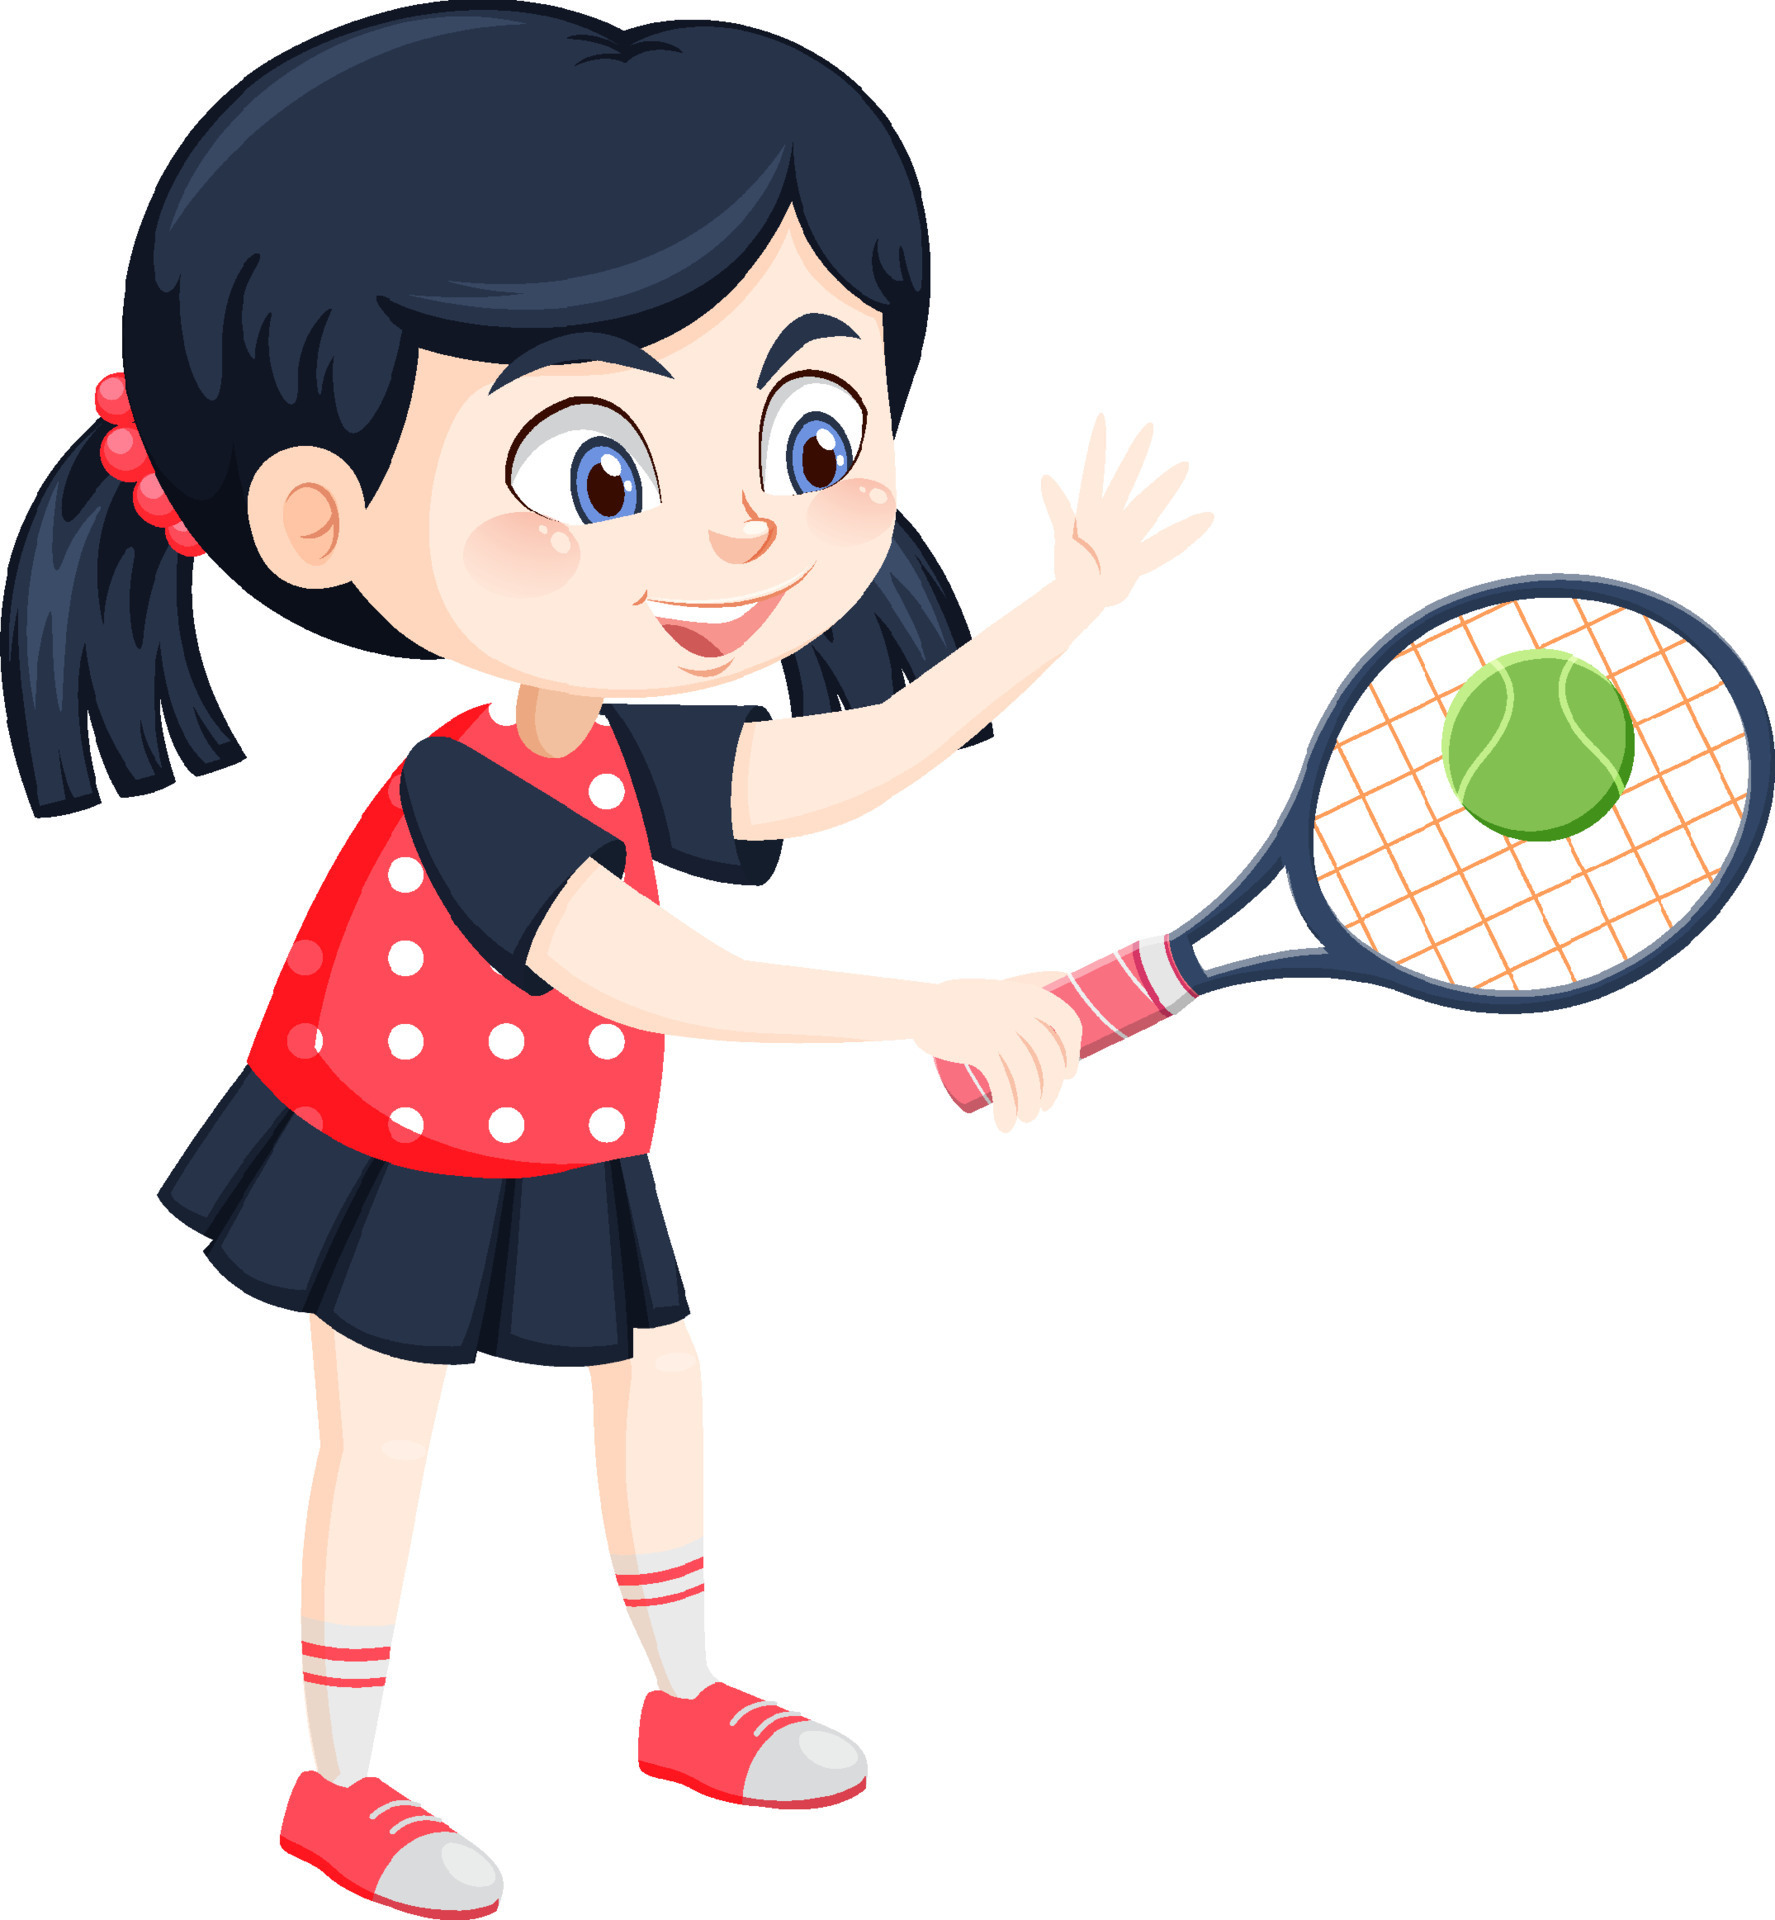 Cute girl tennis player cartoon 7562251 Vector Art at Vecteezy